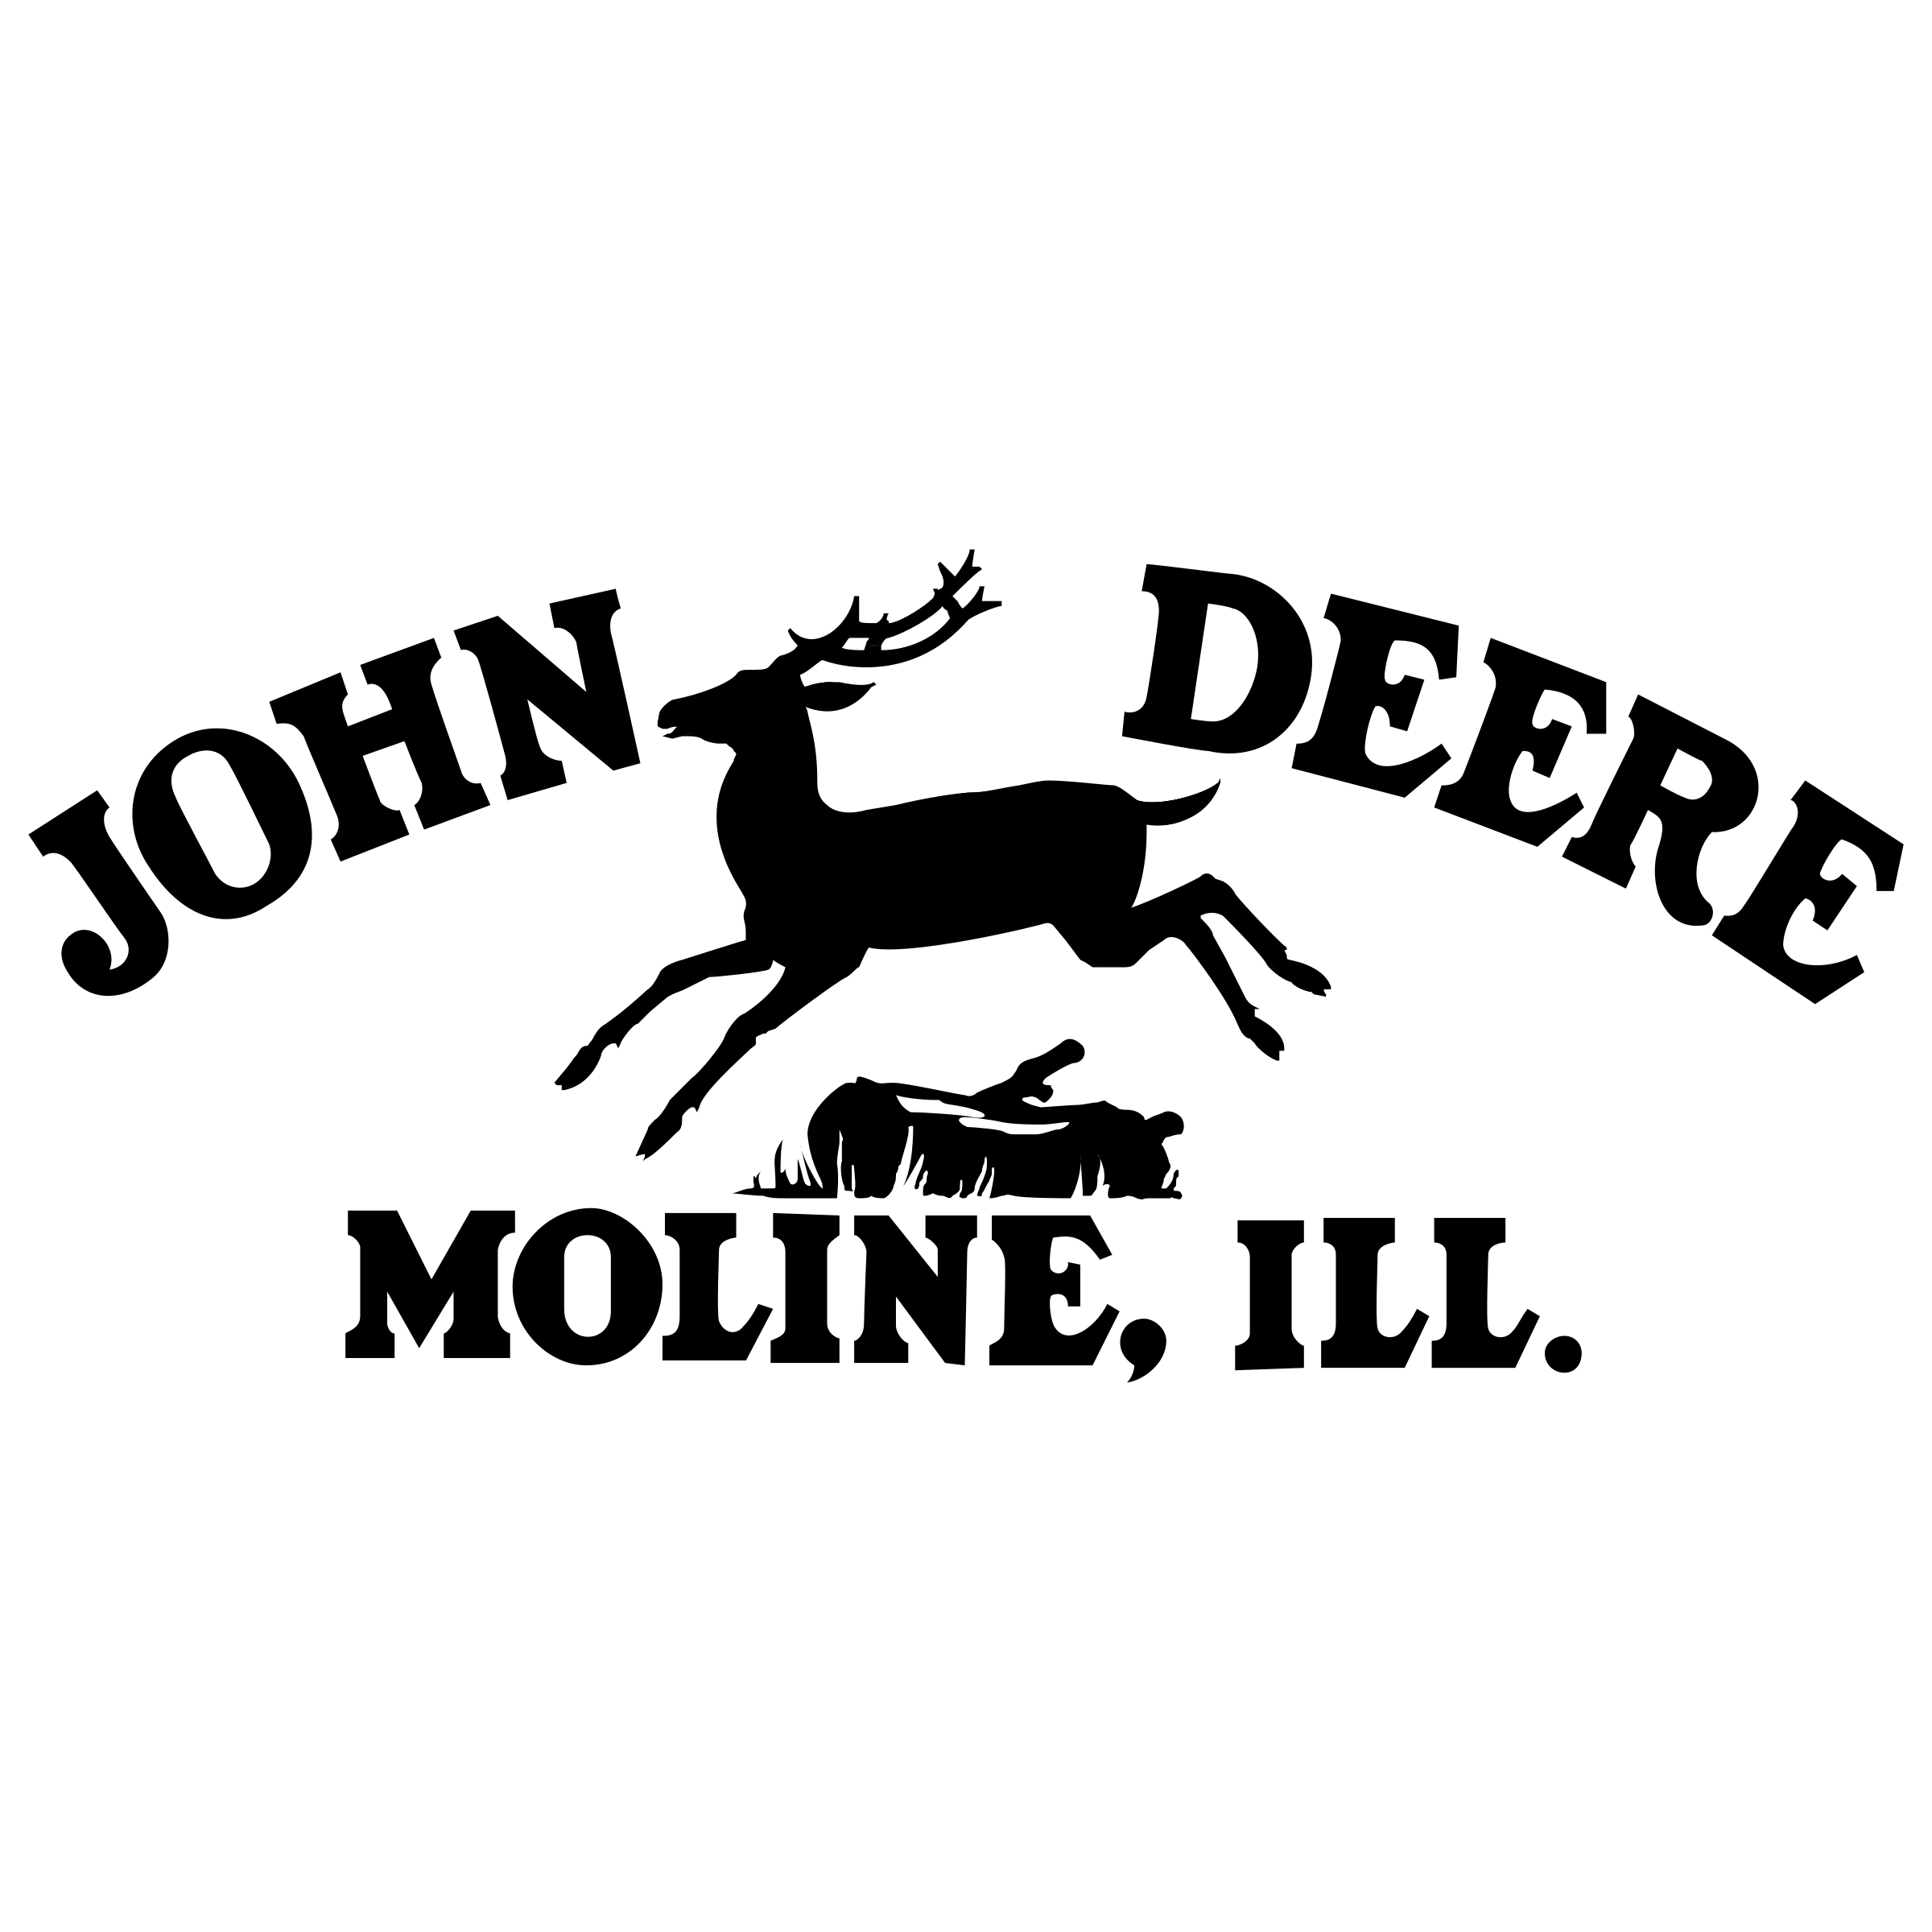 Moline Logo - John Deere Moline Logo PNG Transparent & SVG Vector - Freebie Supply